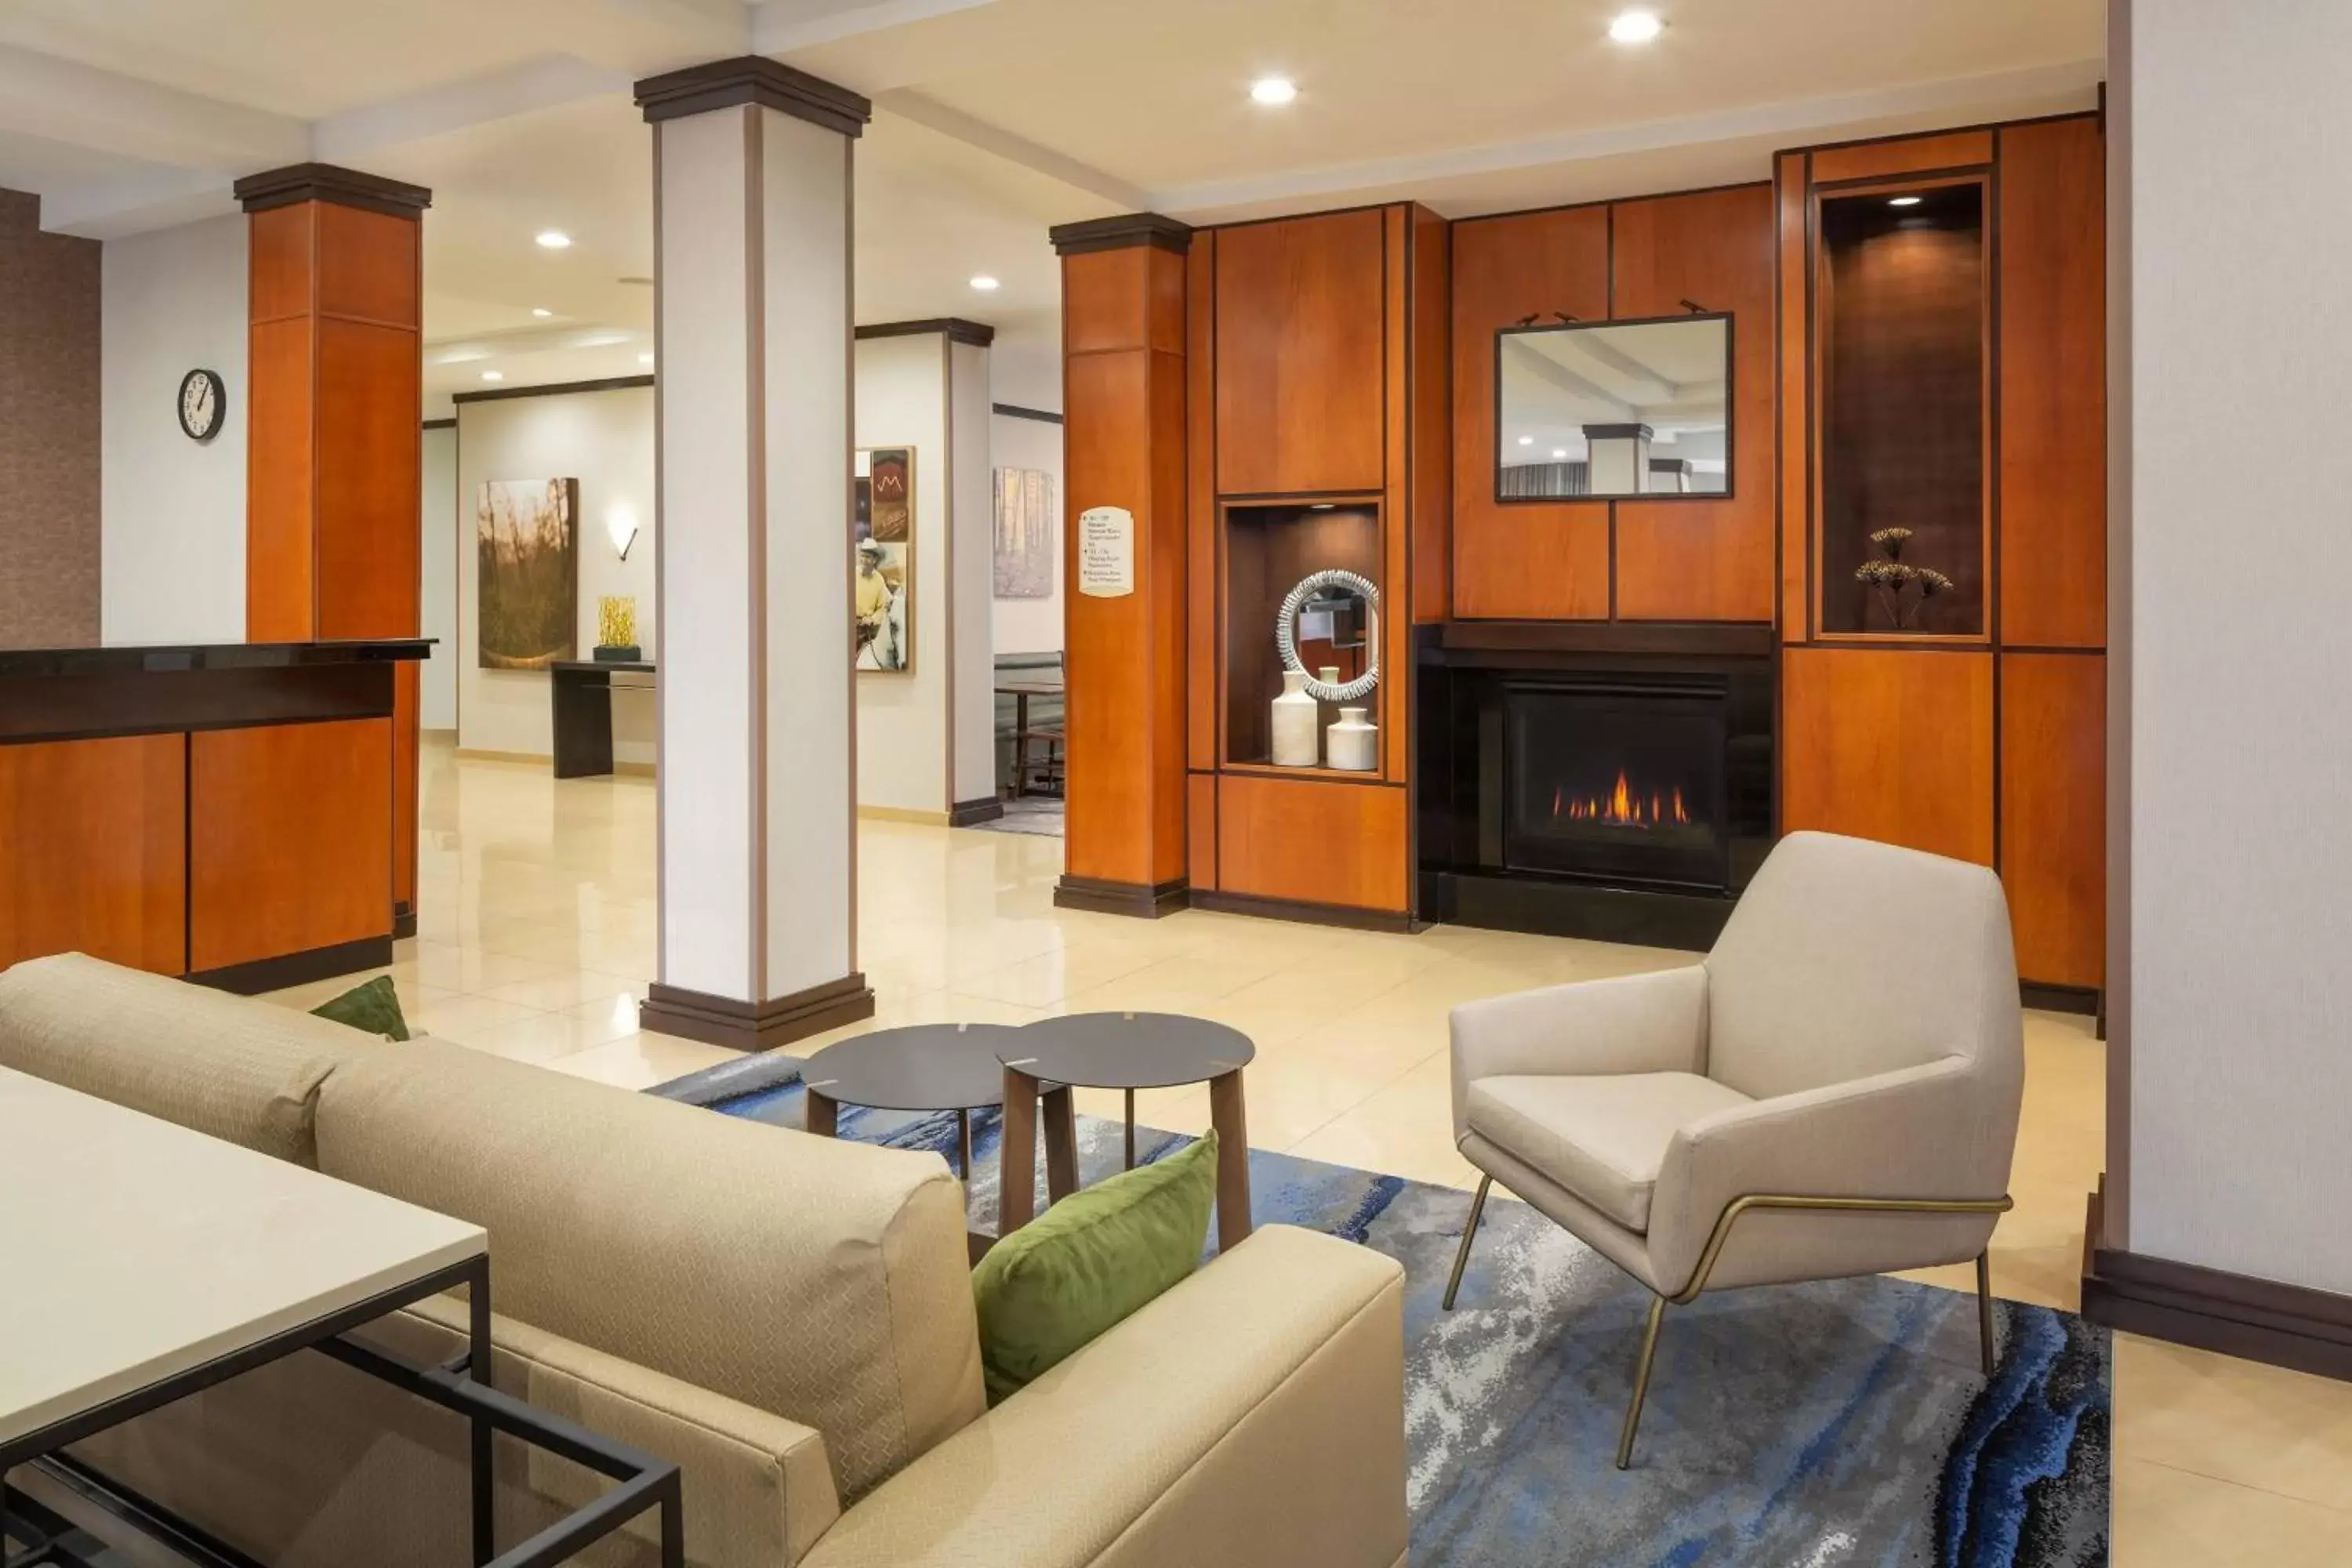 Lobby or reception, Lobby/Reception in Fairfield Inn & Suites by Marriott Selma Kingsburg